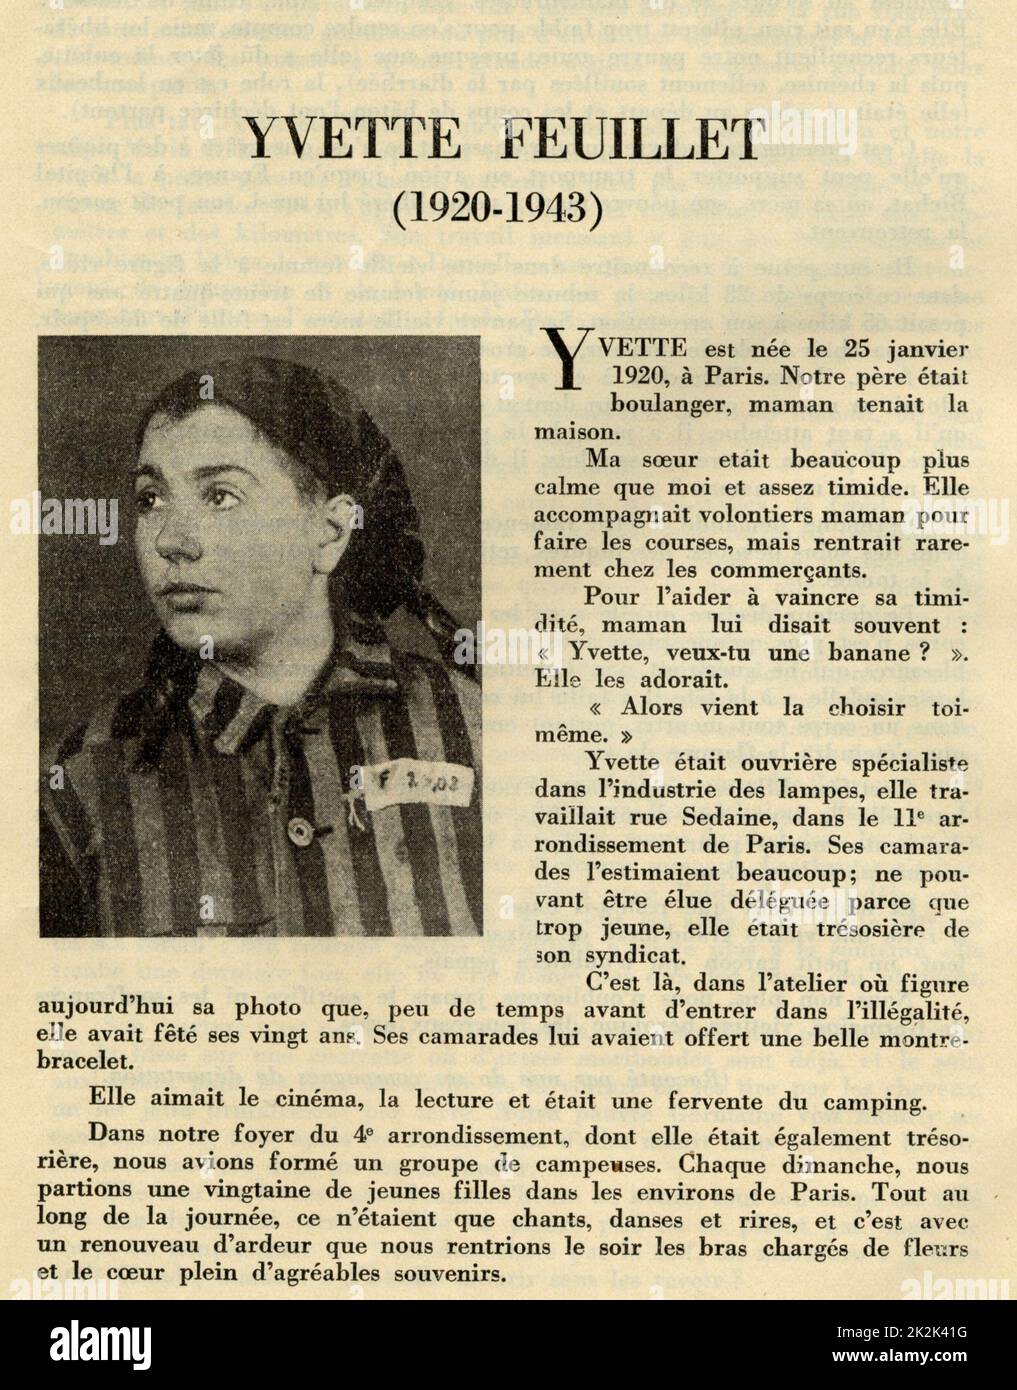 Registro dell'Unione delle donne francesi dedicata alle donne eroiche morte per la Francia: Ritratto di Yvette Feuillet (1920-1943), morto nel campo di concentramento di Auschwitz. 1950 Francia Charles Grodzenski Collection Foto Stock